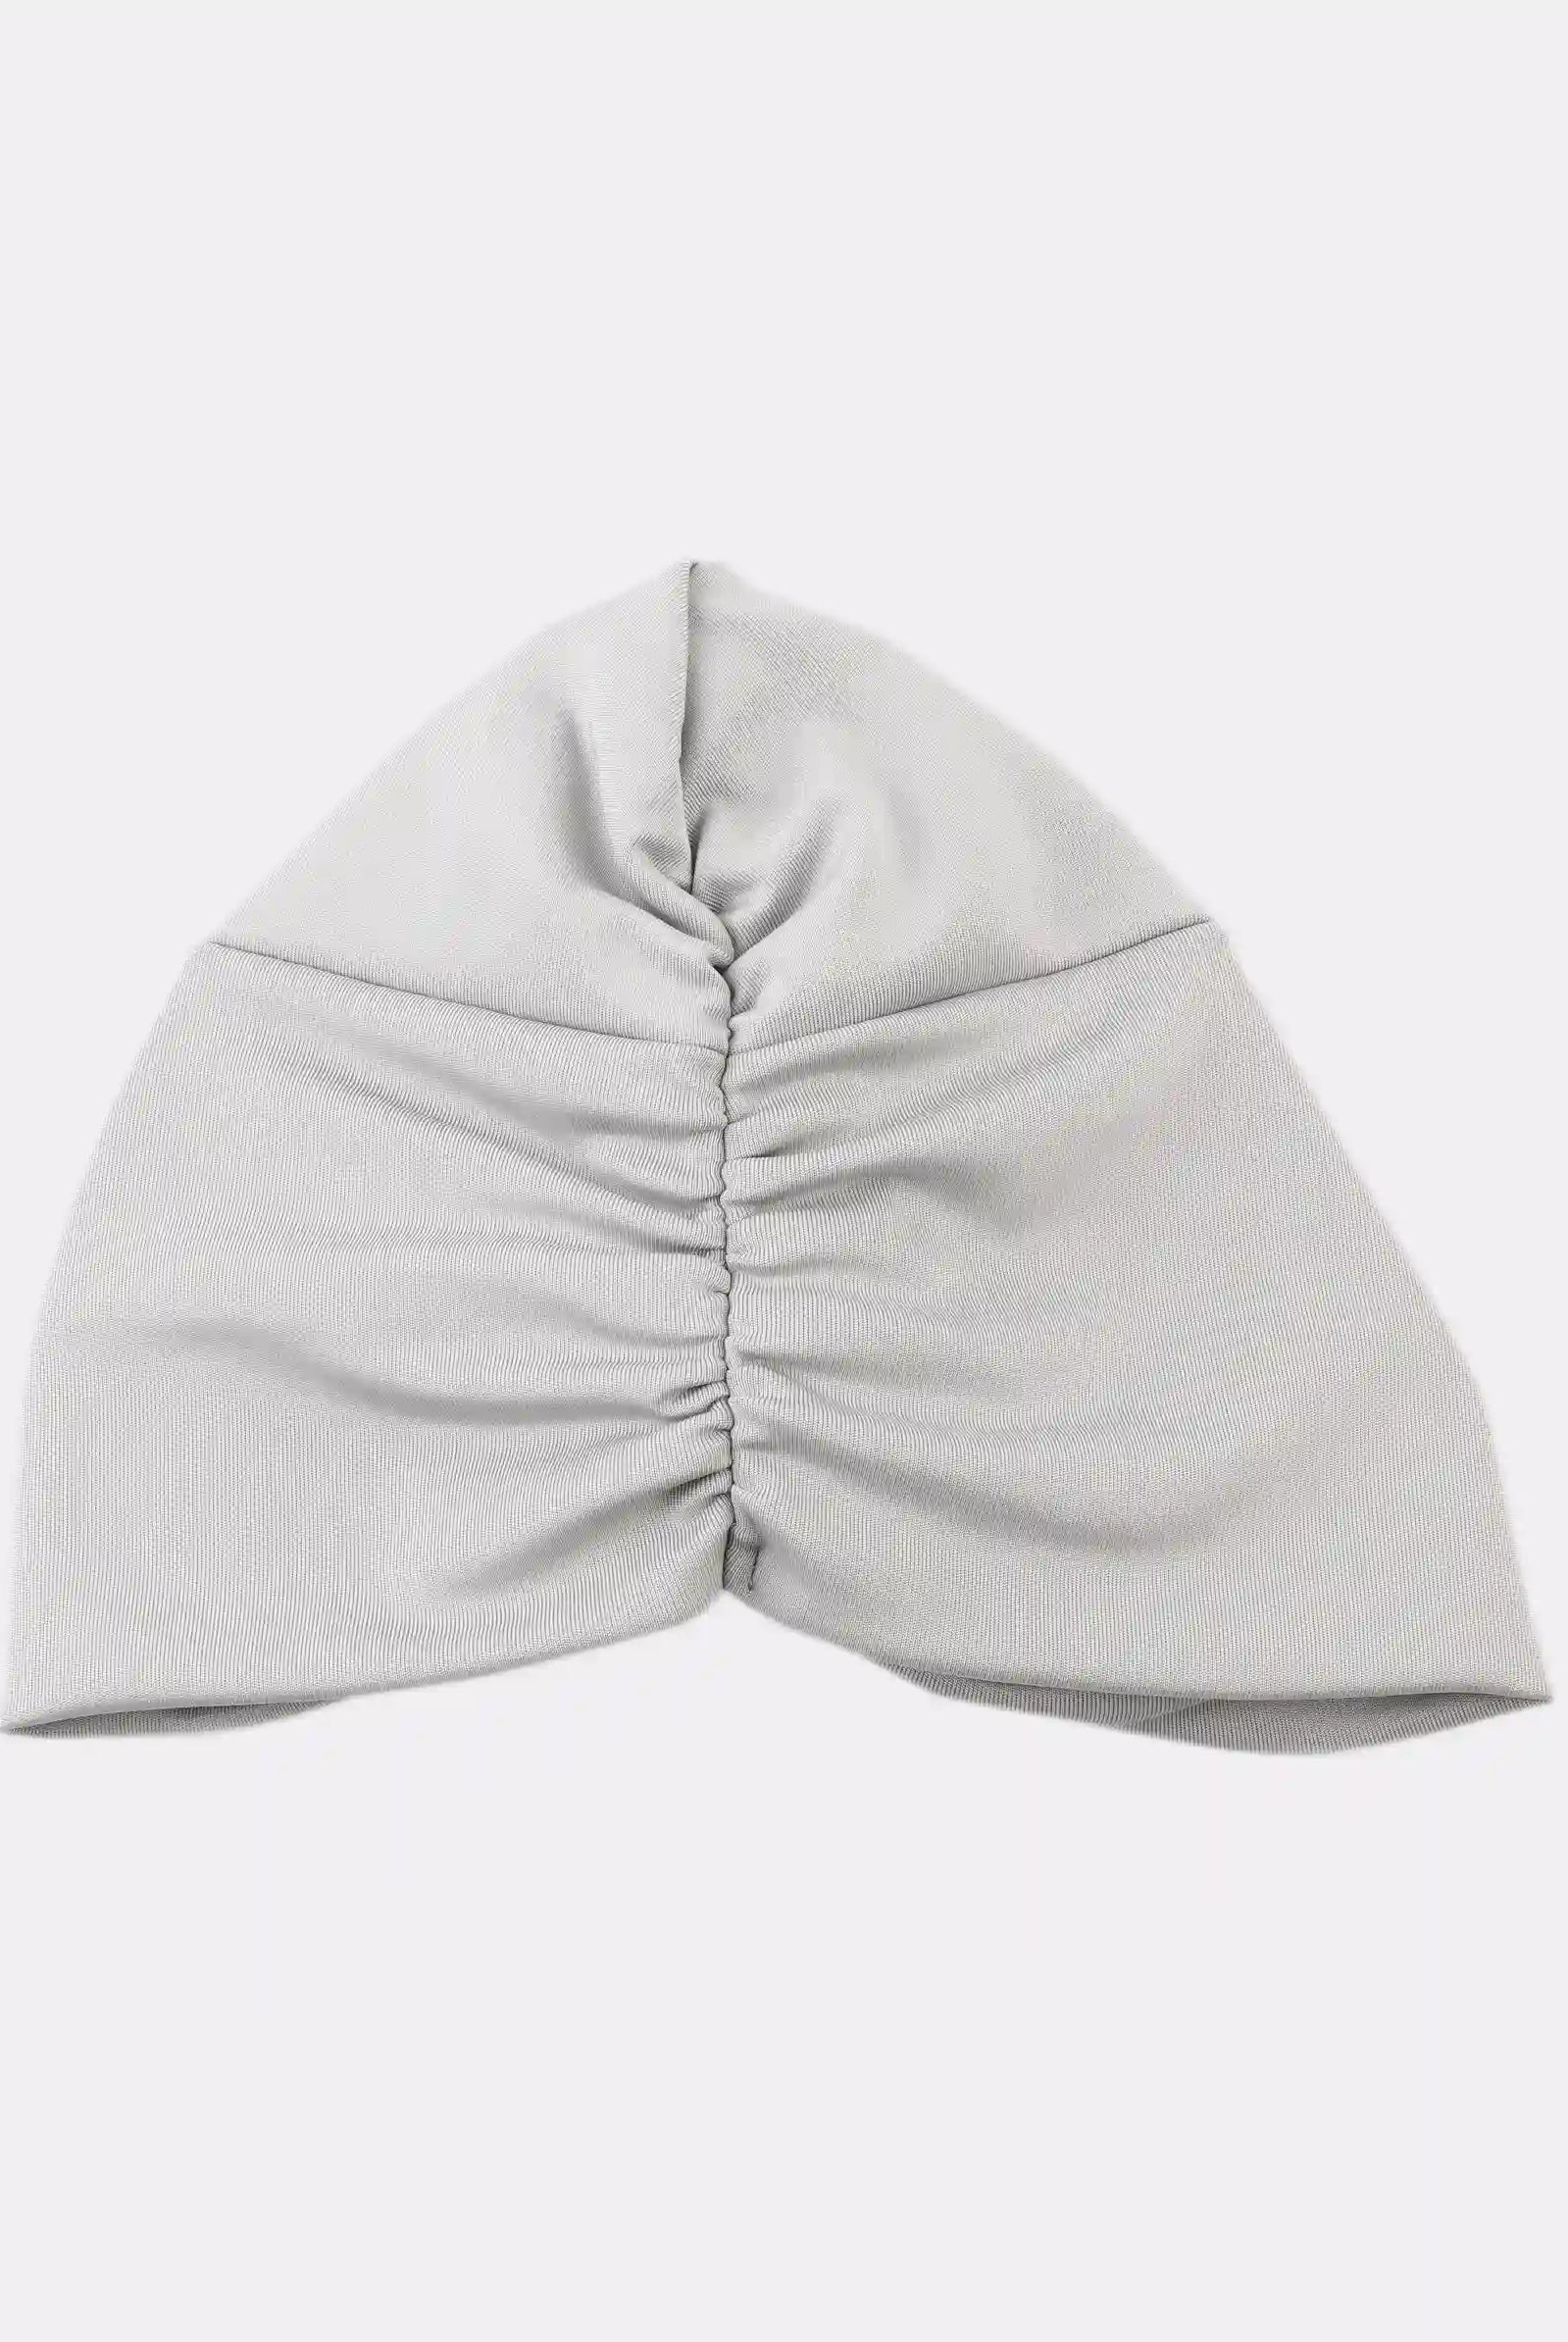 grey turban uk